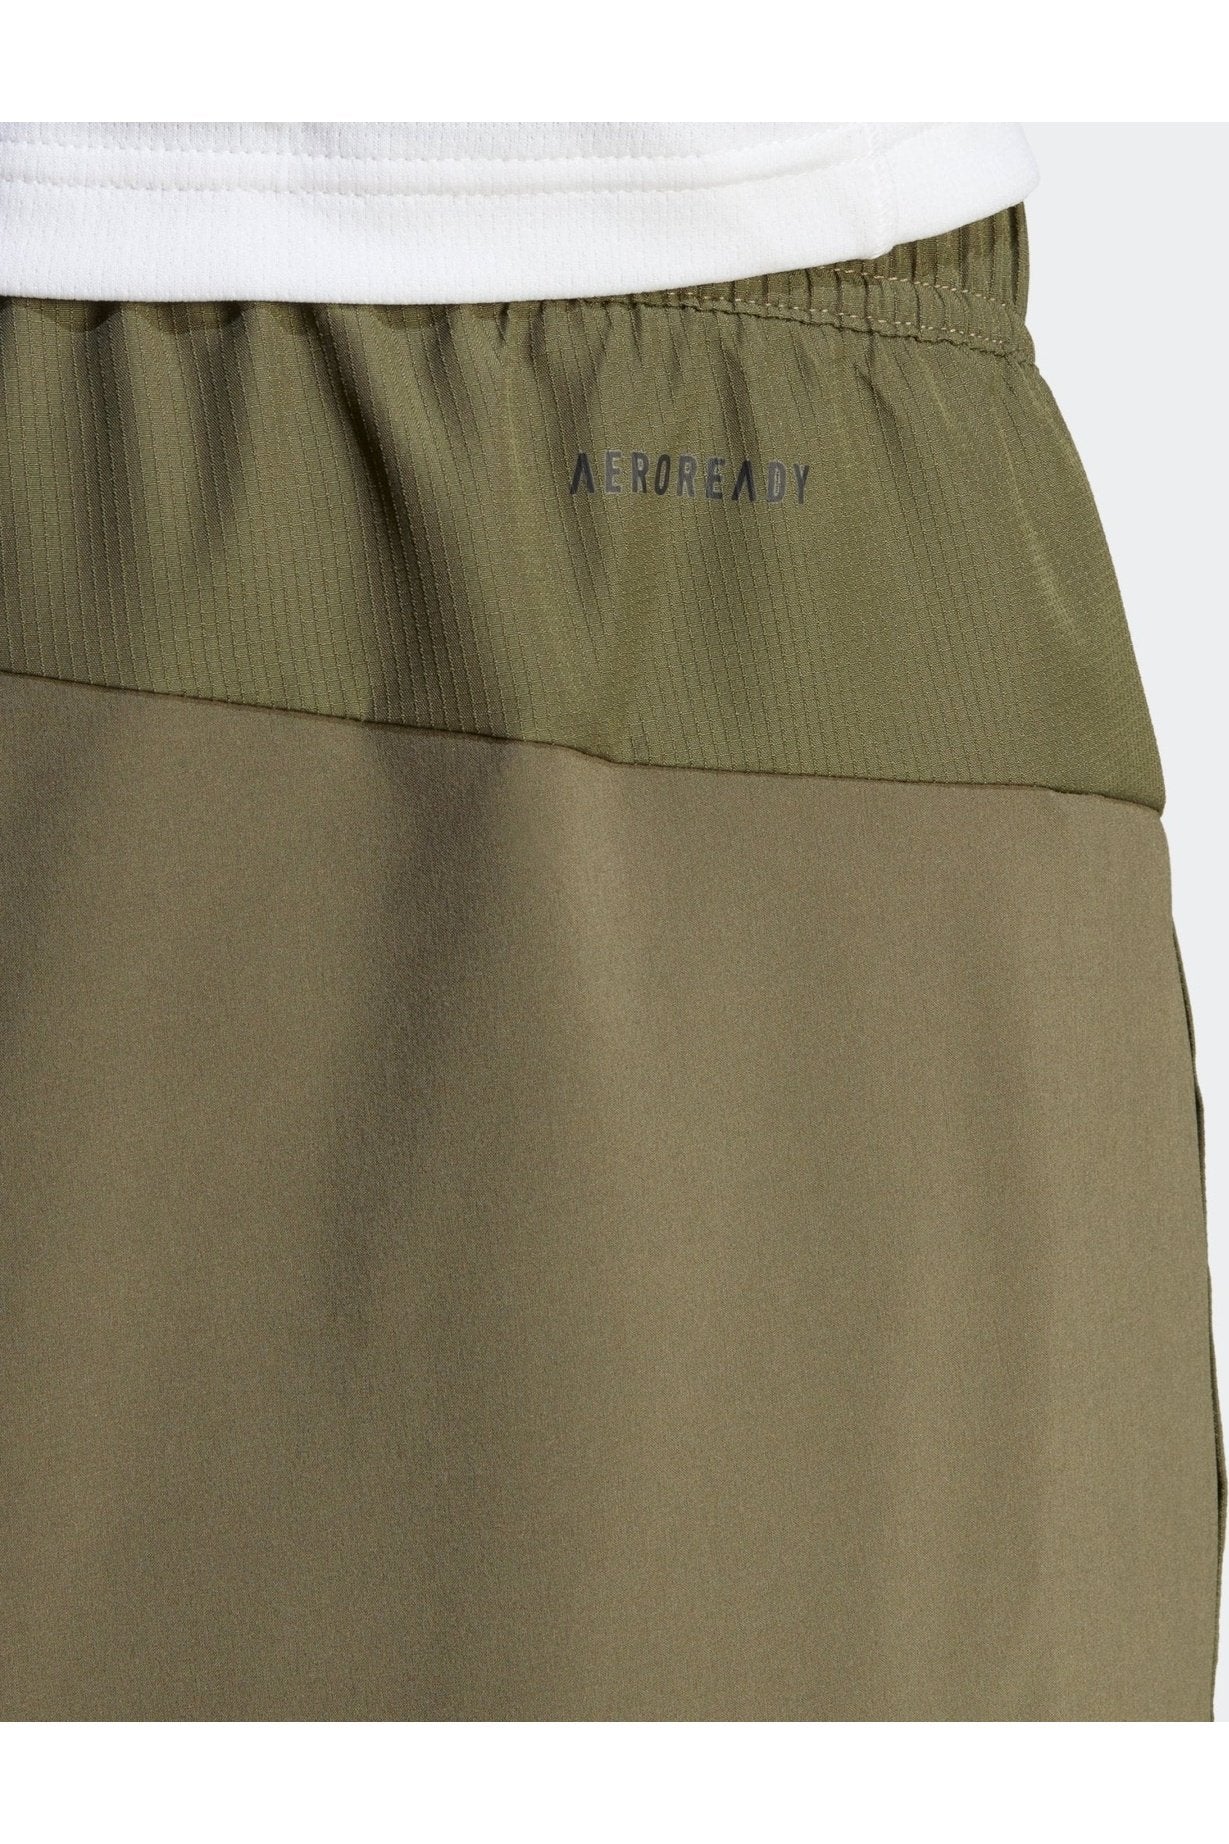 ADIDAS - מכנסיים ארוכים לגברים AEROREADY DESIGNED FOR MOVEMENT בצבע ירוק זית - MASHBIR//365